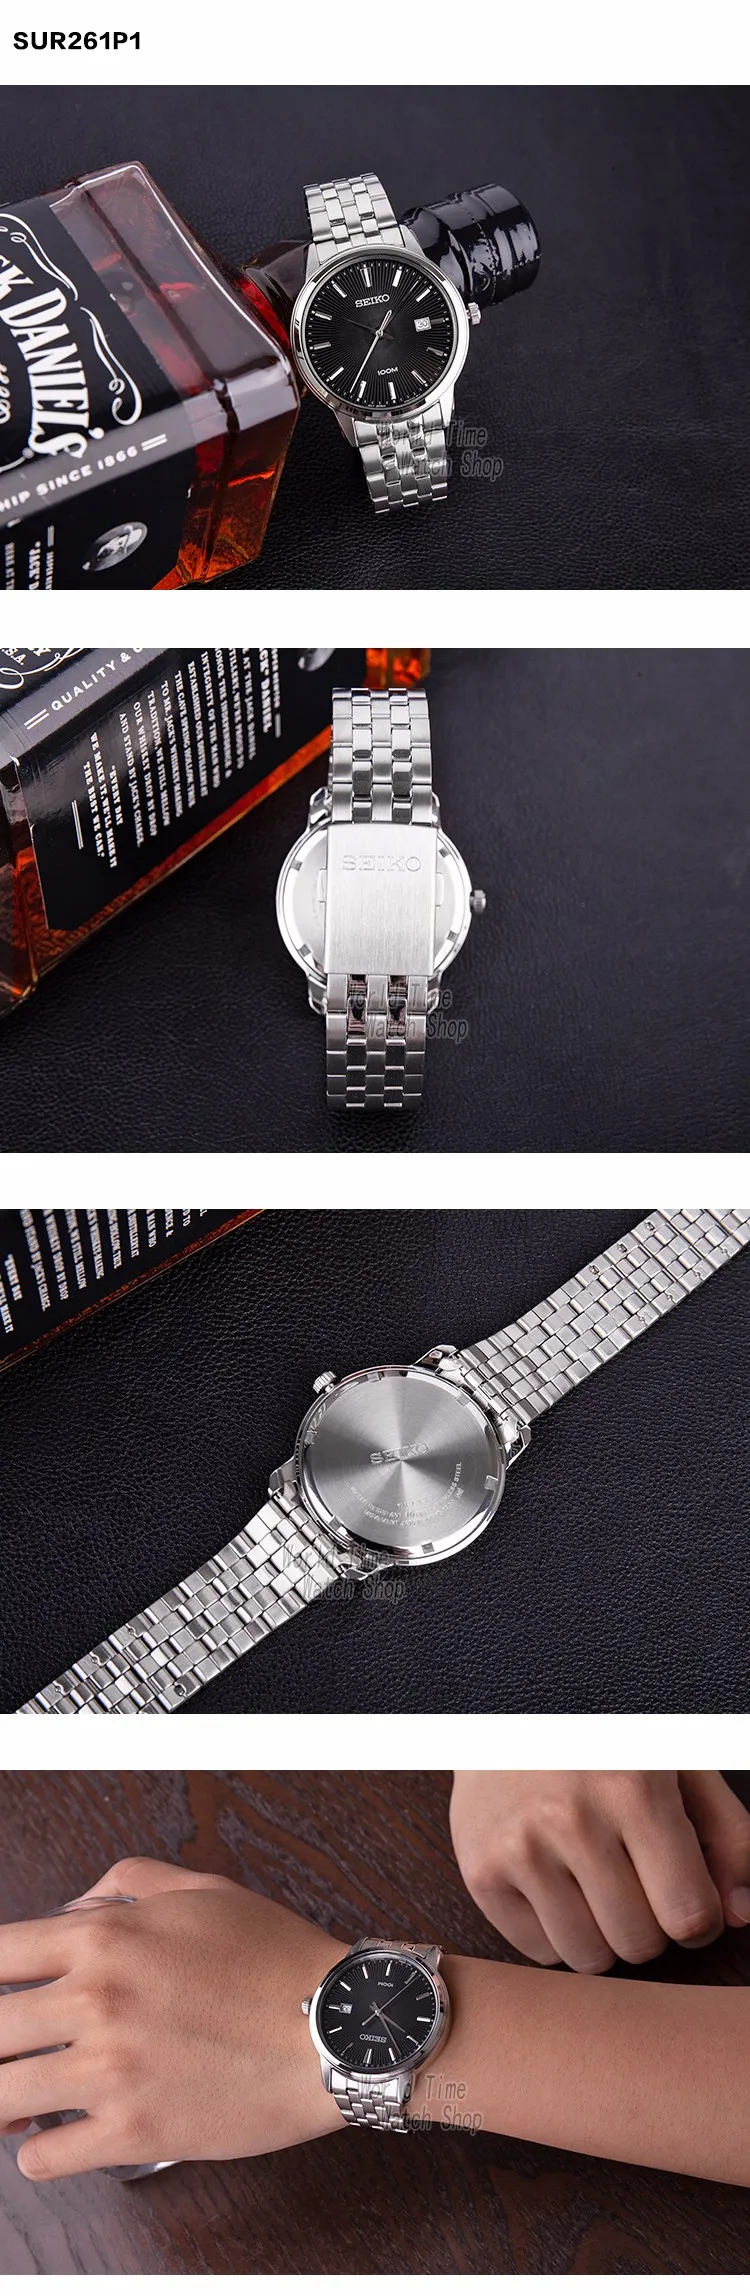 Seiko часы мужские Топ люксовый бренд водонепроницаемые спортивные наручные часы для мужчин Дата кварцевые часы мужские часы Relogio Masculin SUR263